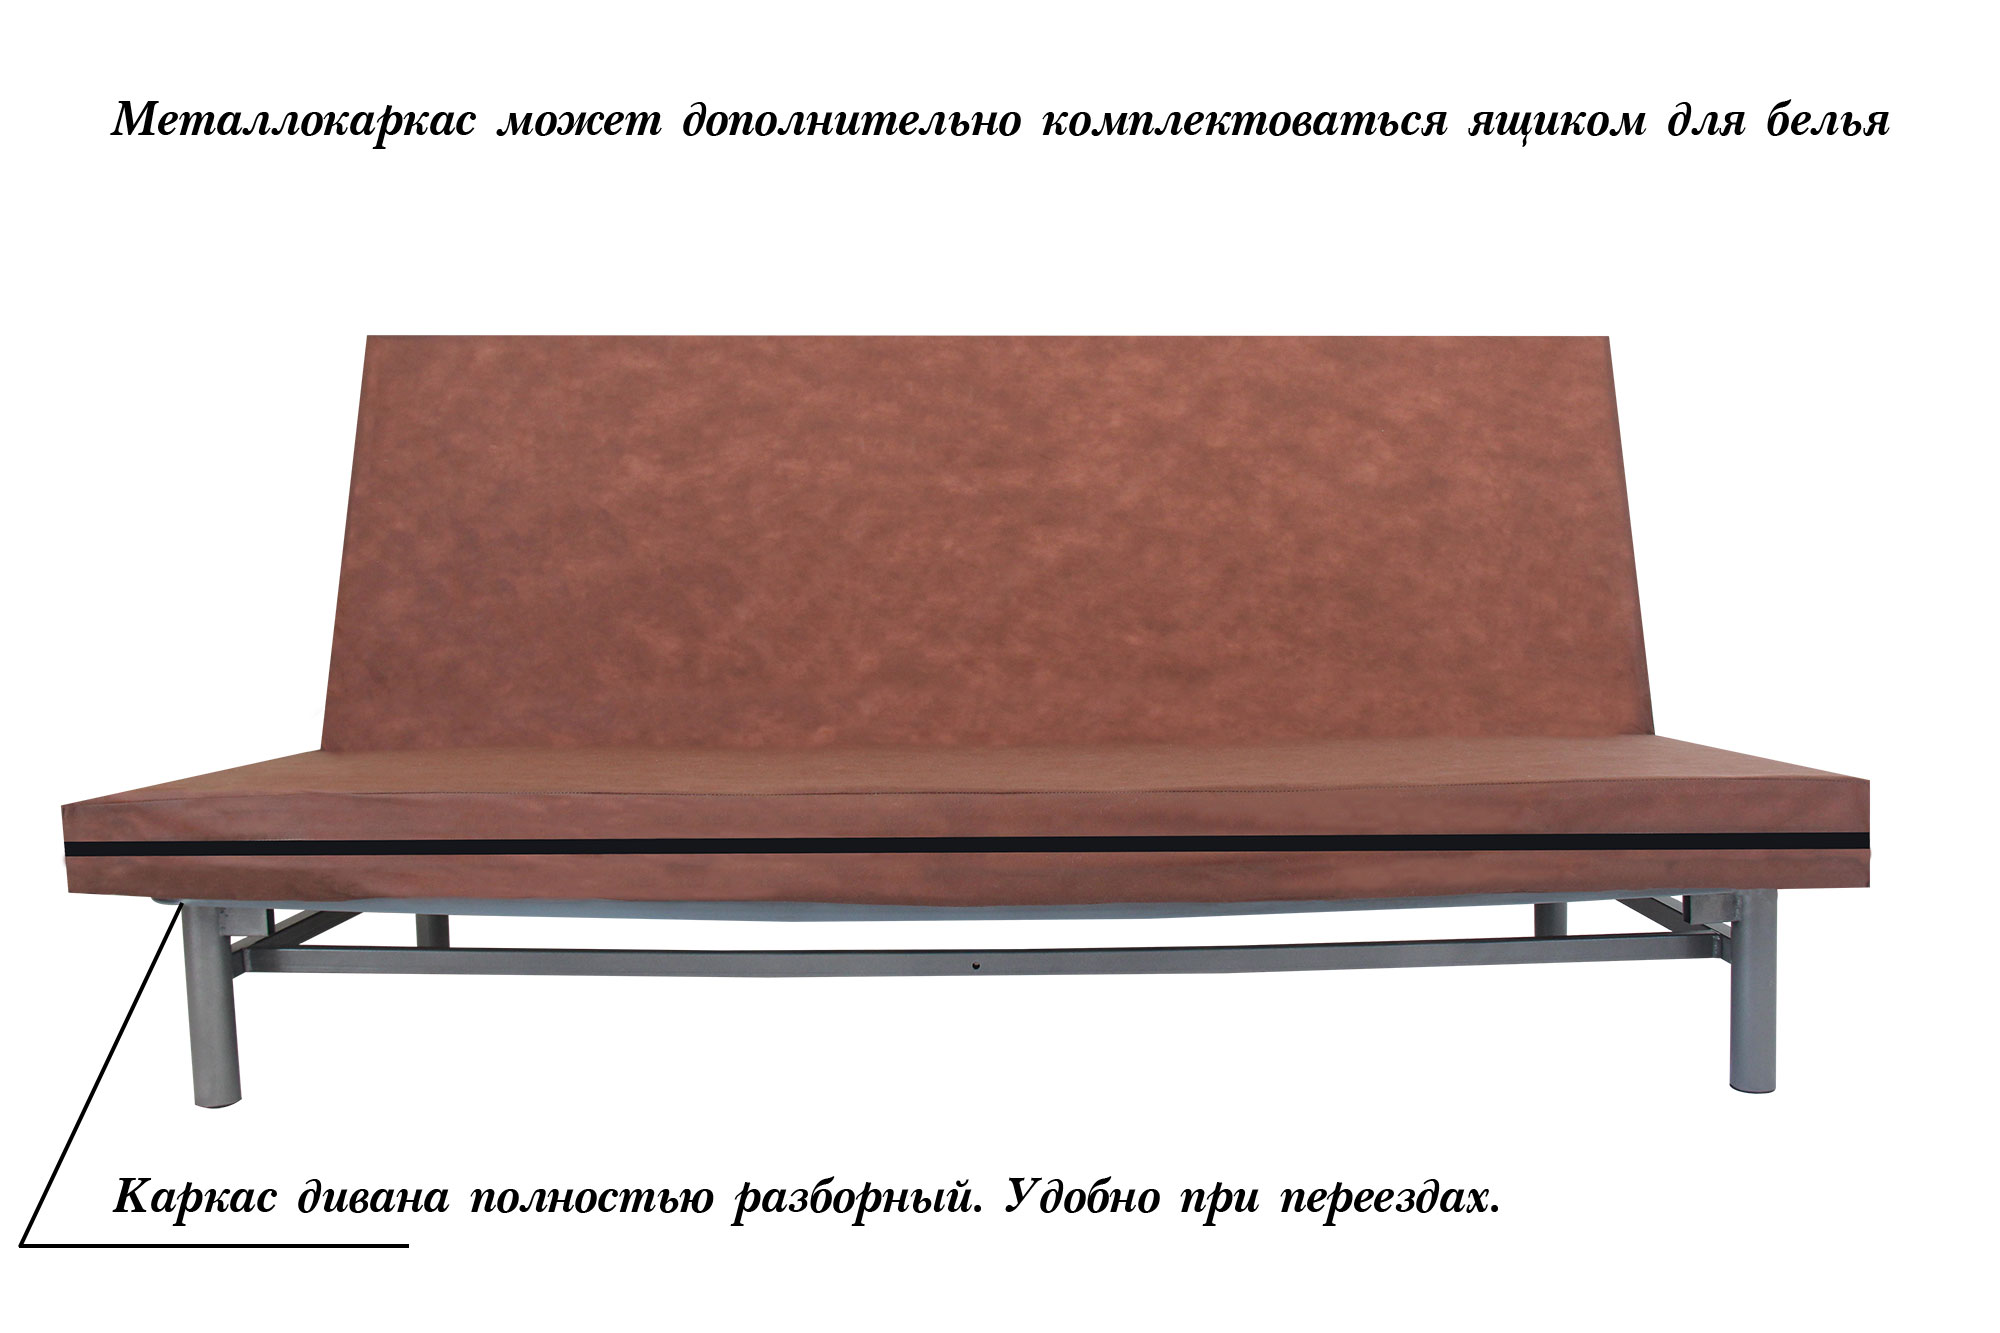 Ремонт дивана книжка - низкие цены на ремонт дивана книжка | Нордит